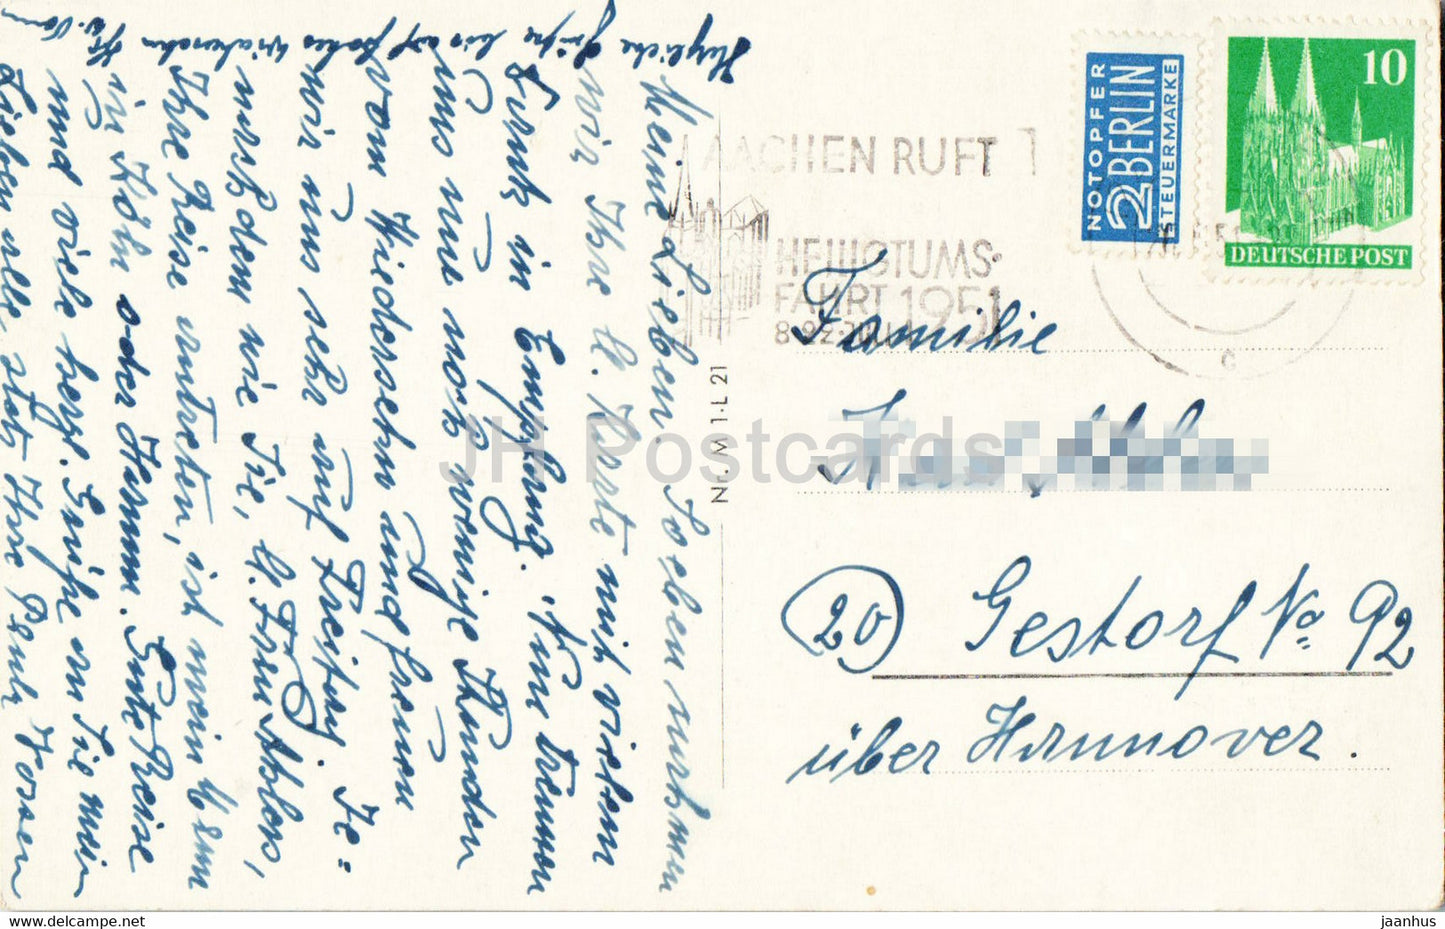 Aachen - Dom - alte Postkarte - 1951 - Deutschland - gebraucht